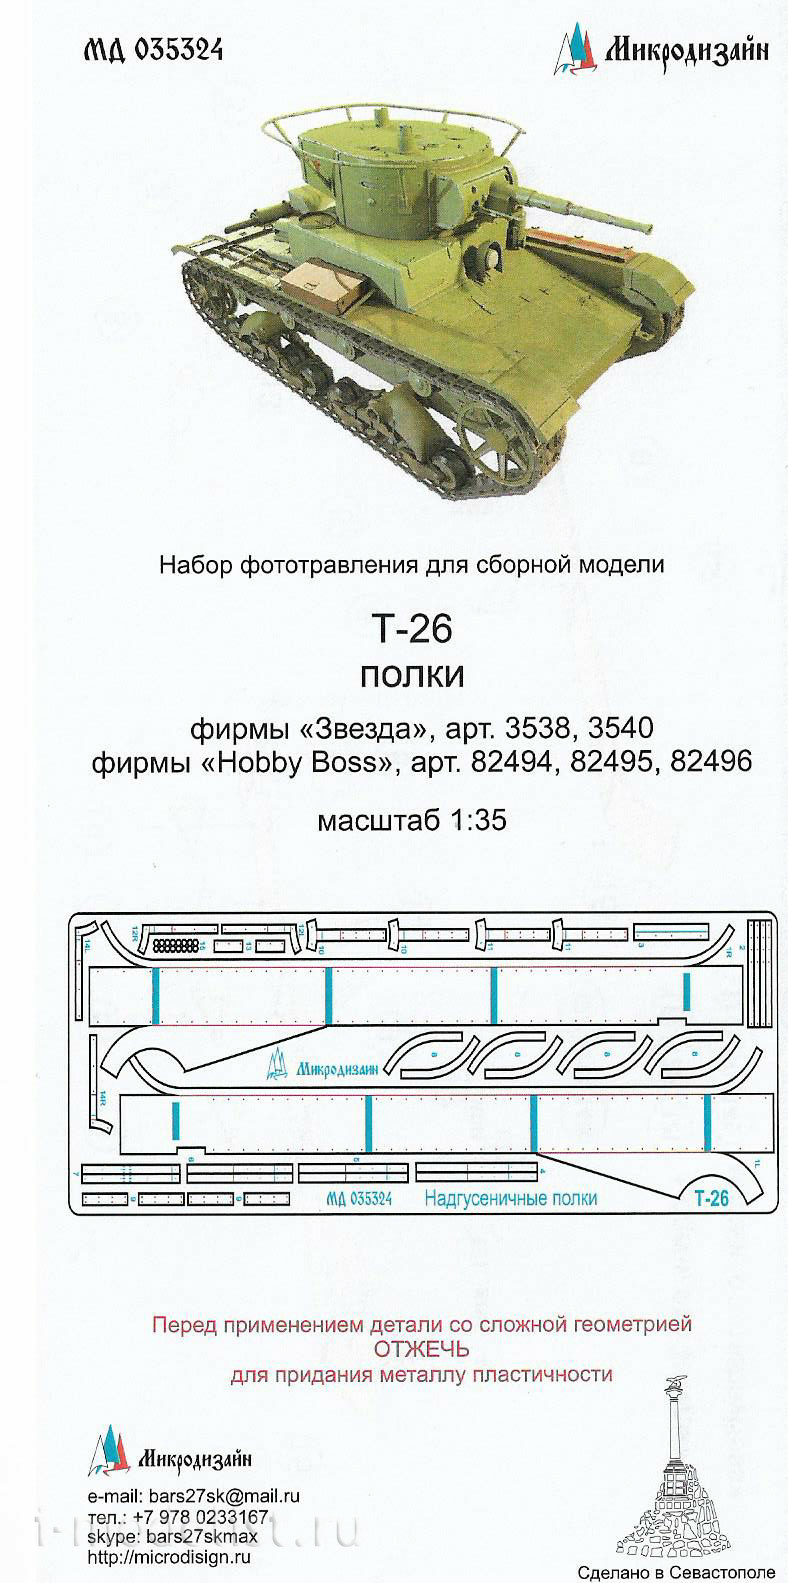 035324 Микродизайн 1/35 Т-26 надгусеничные полки (ЗВЕЗДА/HOBBY BOSS)